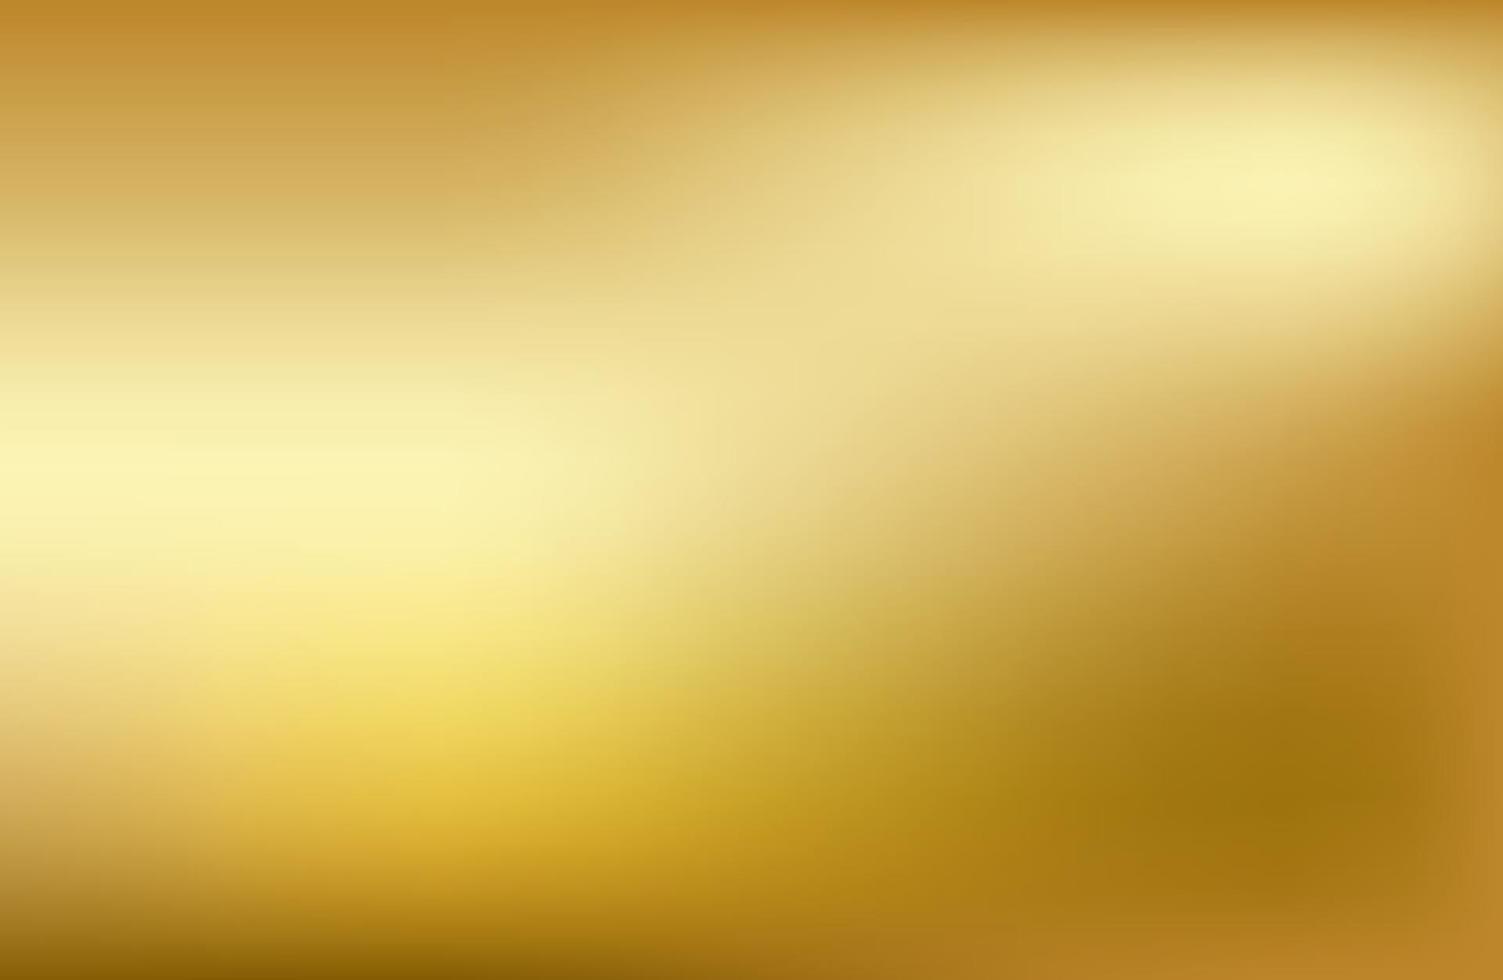 vector de gradiente de oro. textura de fondo degradado dorado metalico